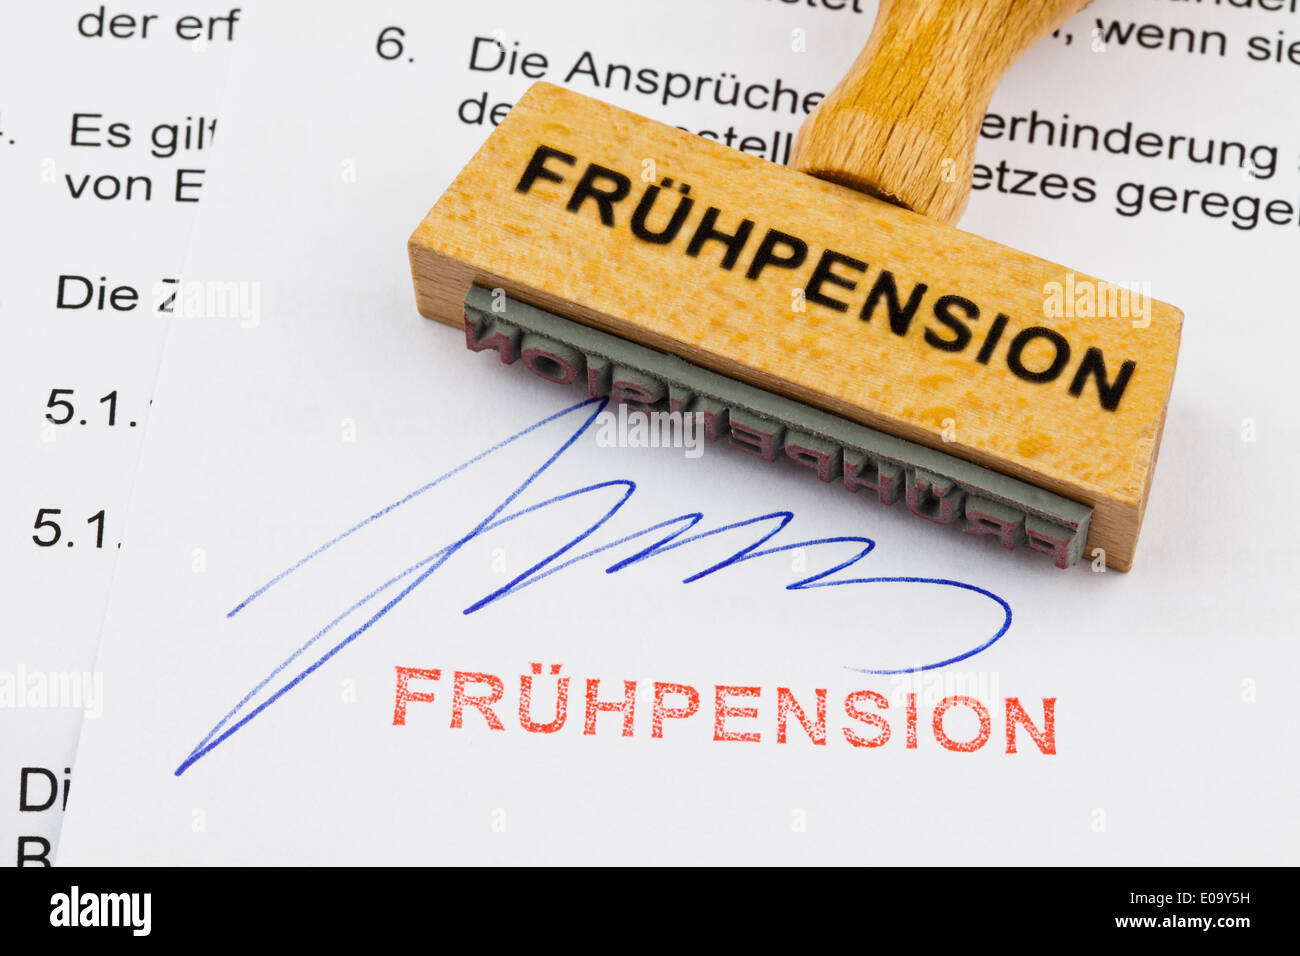 A stamp of wood lies on a document. German label: Early pension, Ein Stempel aus Holz liegt auf einem Dokument. Deutsche Aufschr Stock Photo